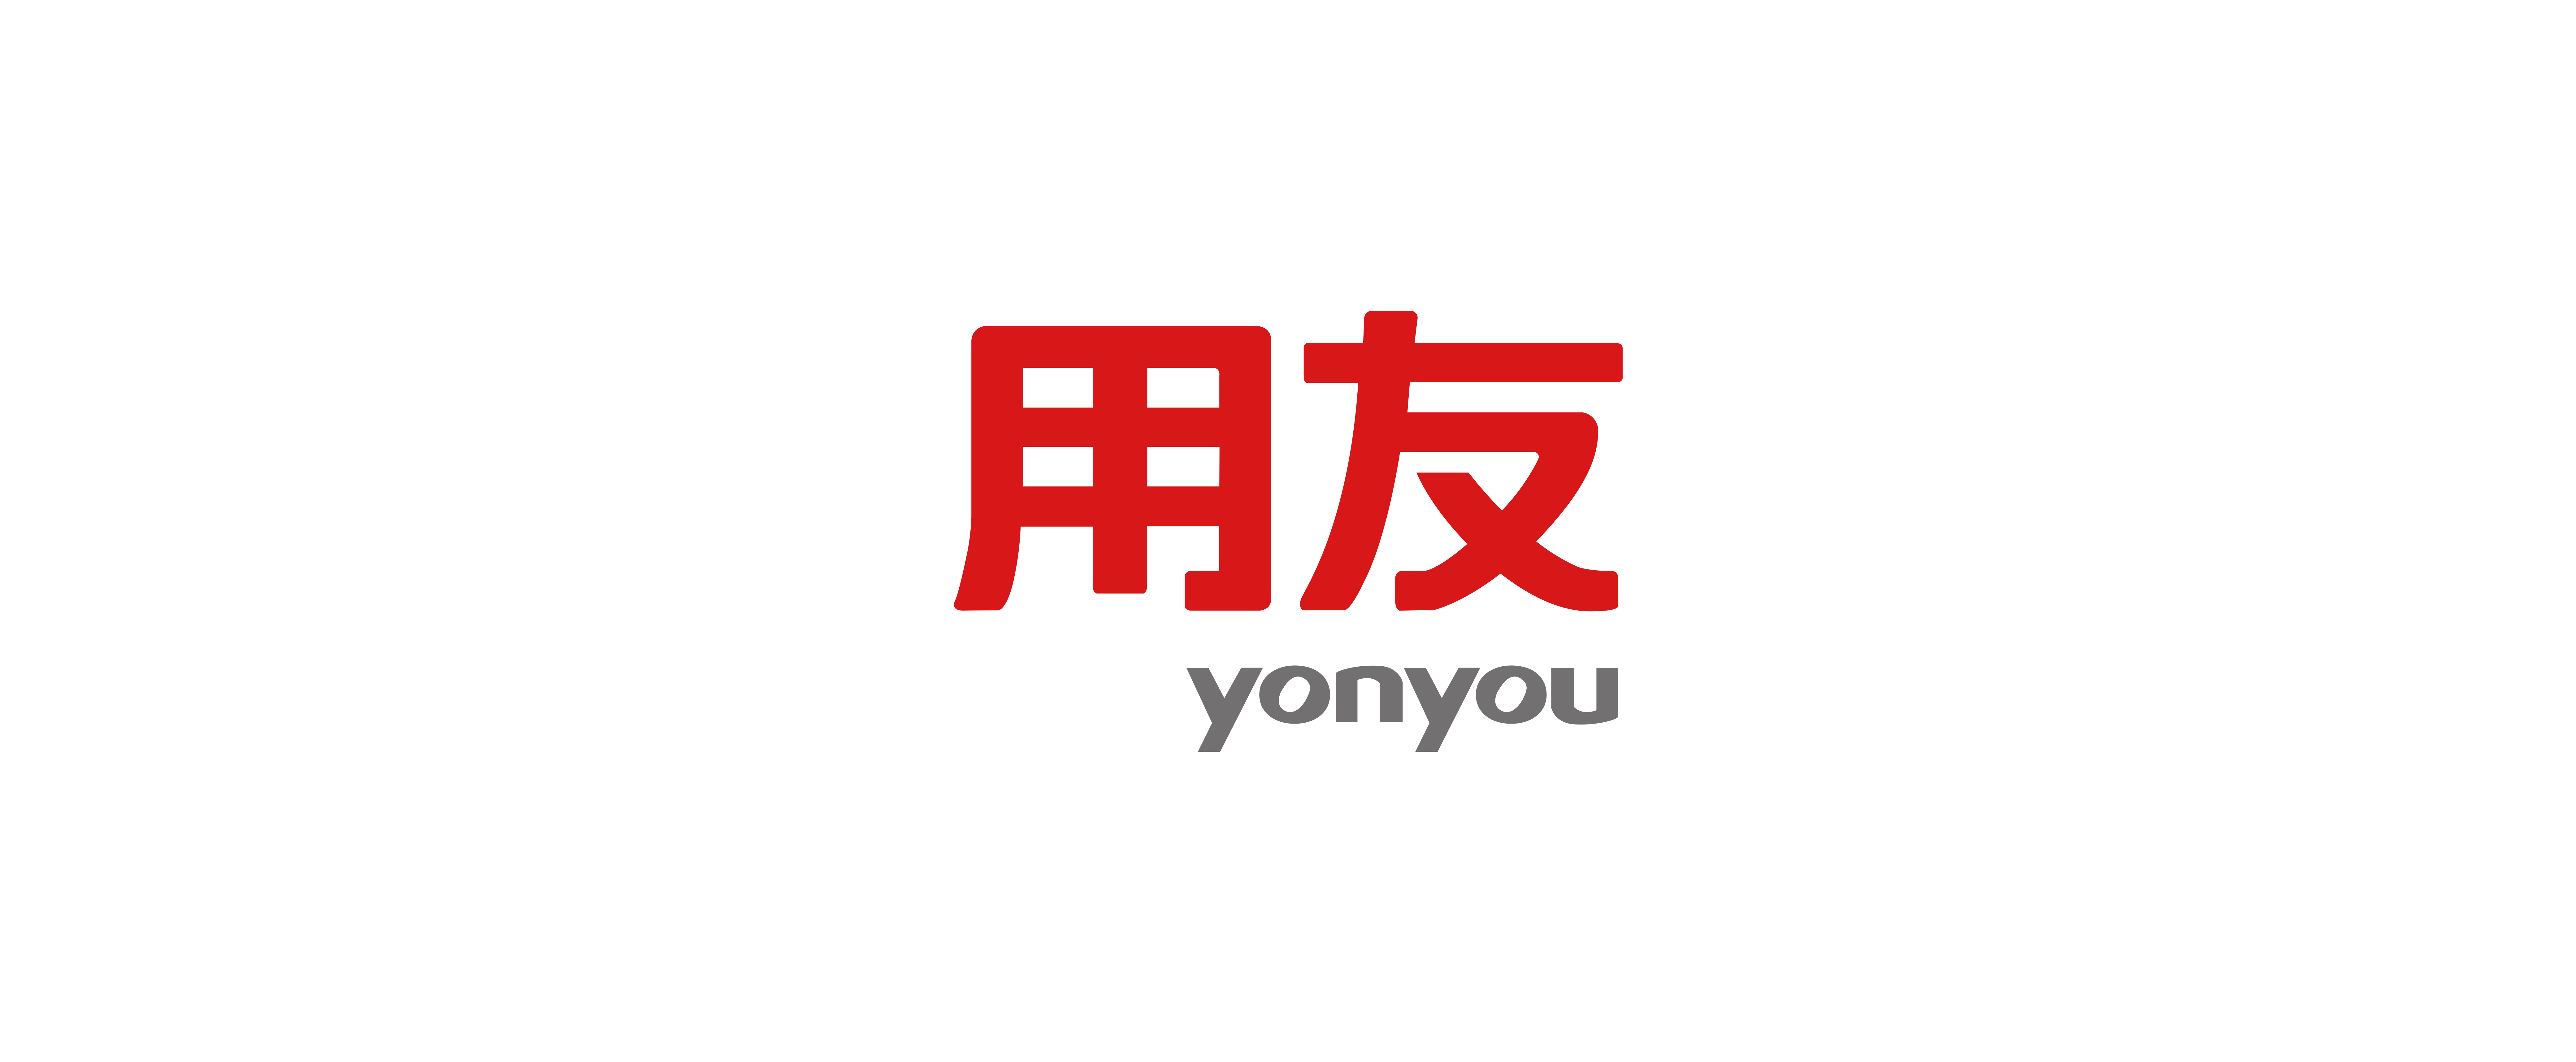 Developer-yonyou